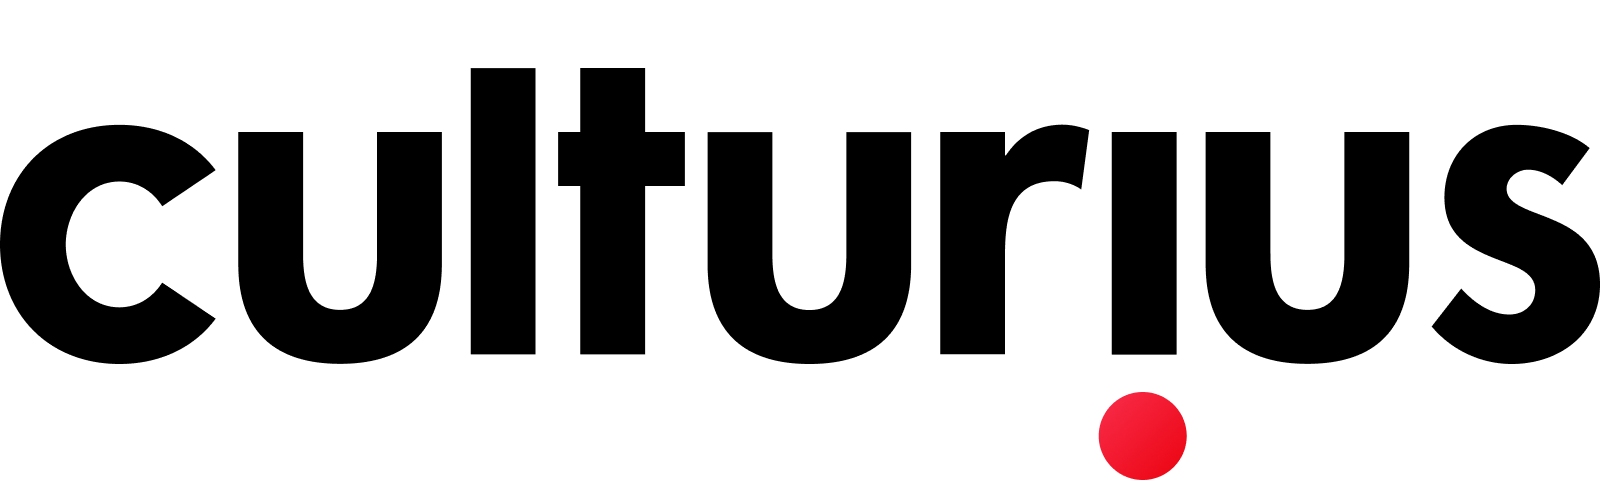 Culturius logo volledig zwart geschreven en een grote rode punt omgekeerd van de i naar beneden